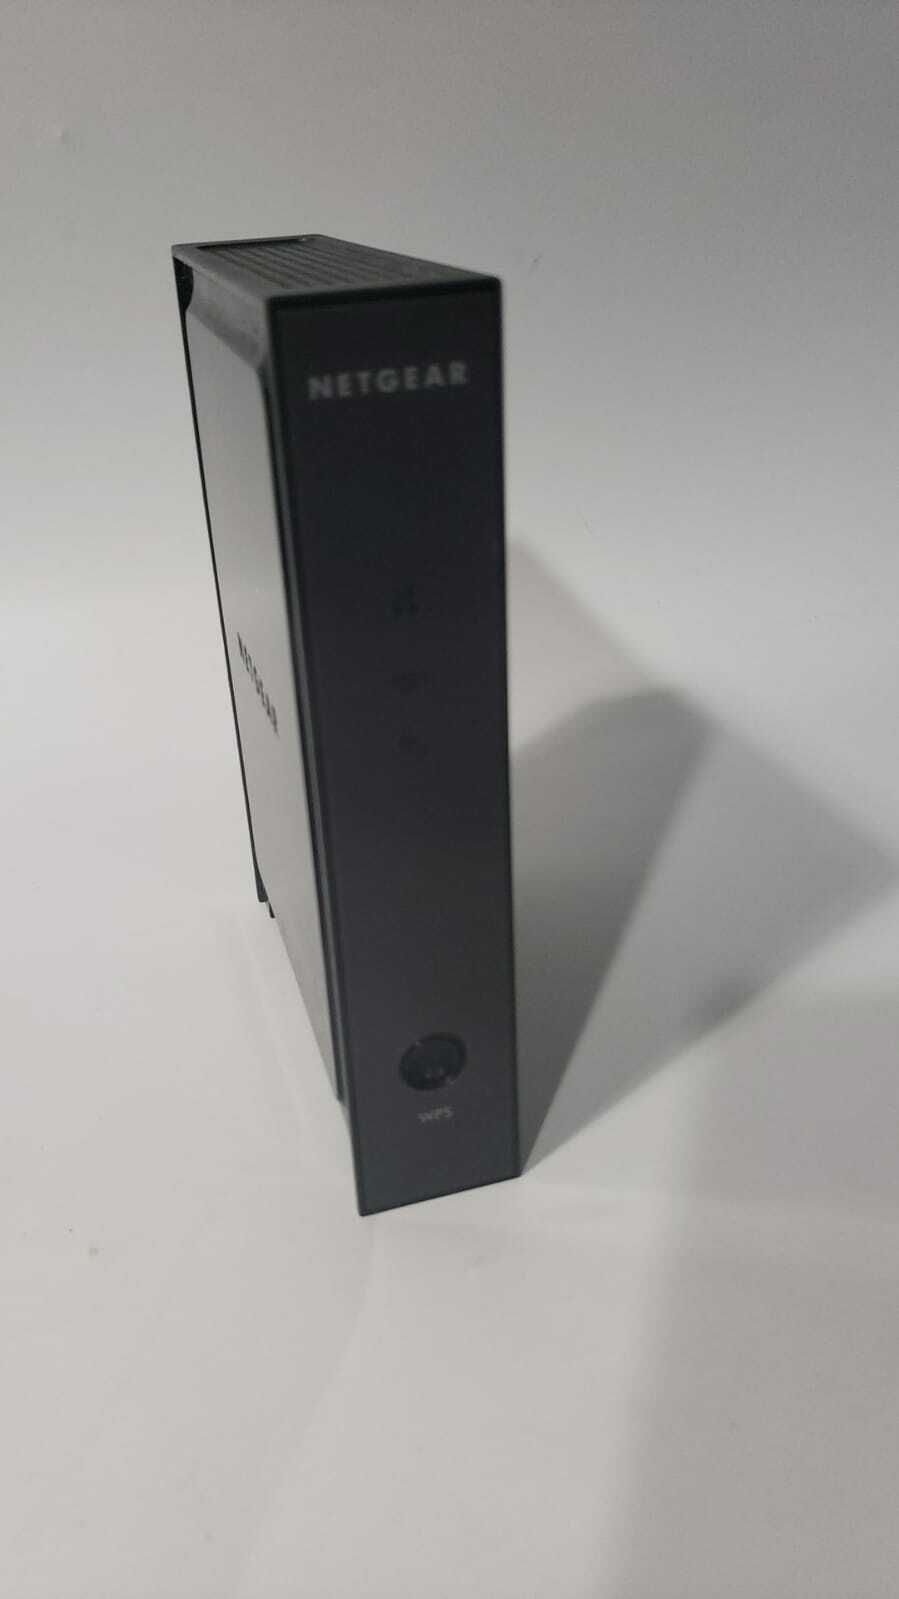 Netgear Range Extender WN2000RPT Universal WiFi Range Extender 4 Port